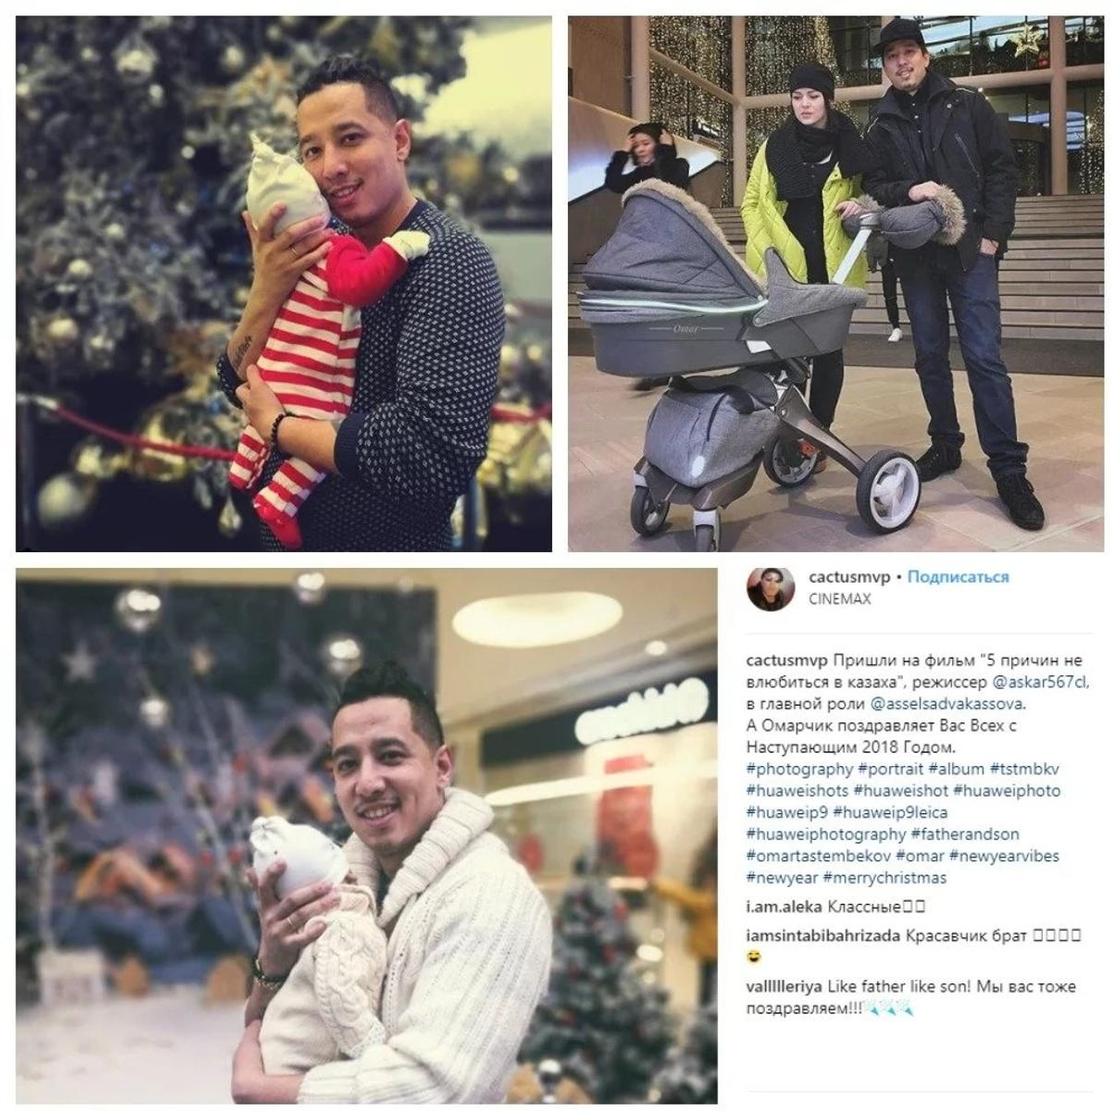 Дамир Тастембеков с семьей. Фото: Instagram